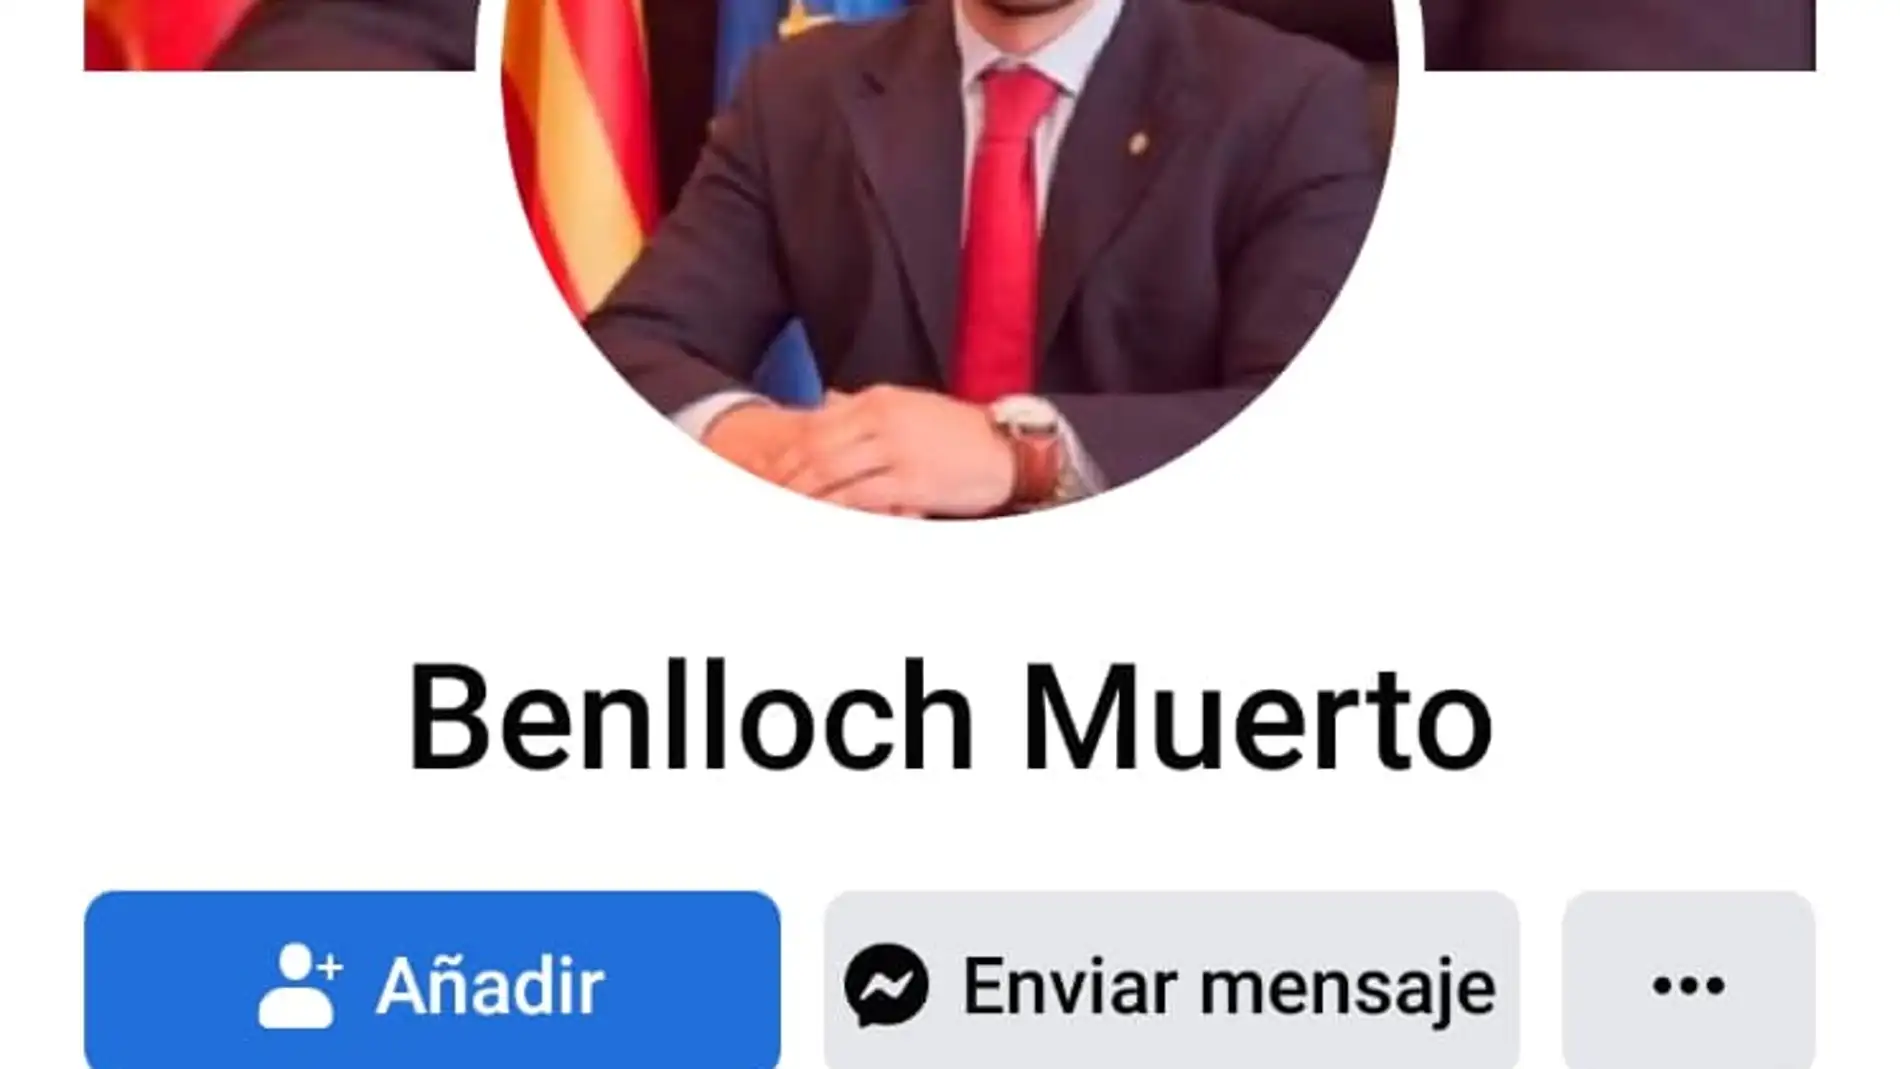 Captura del perfil falso "Benlloch Muerto" de Facebook